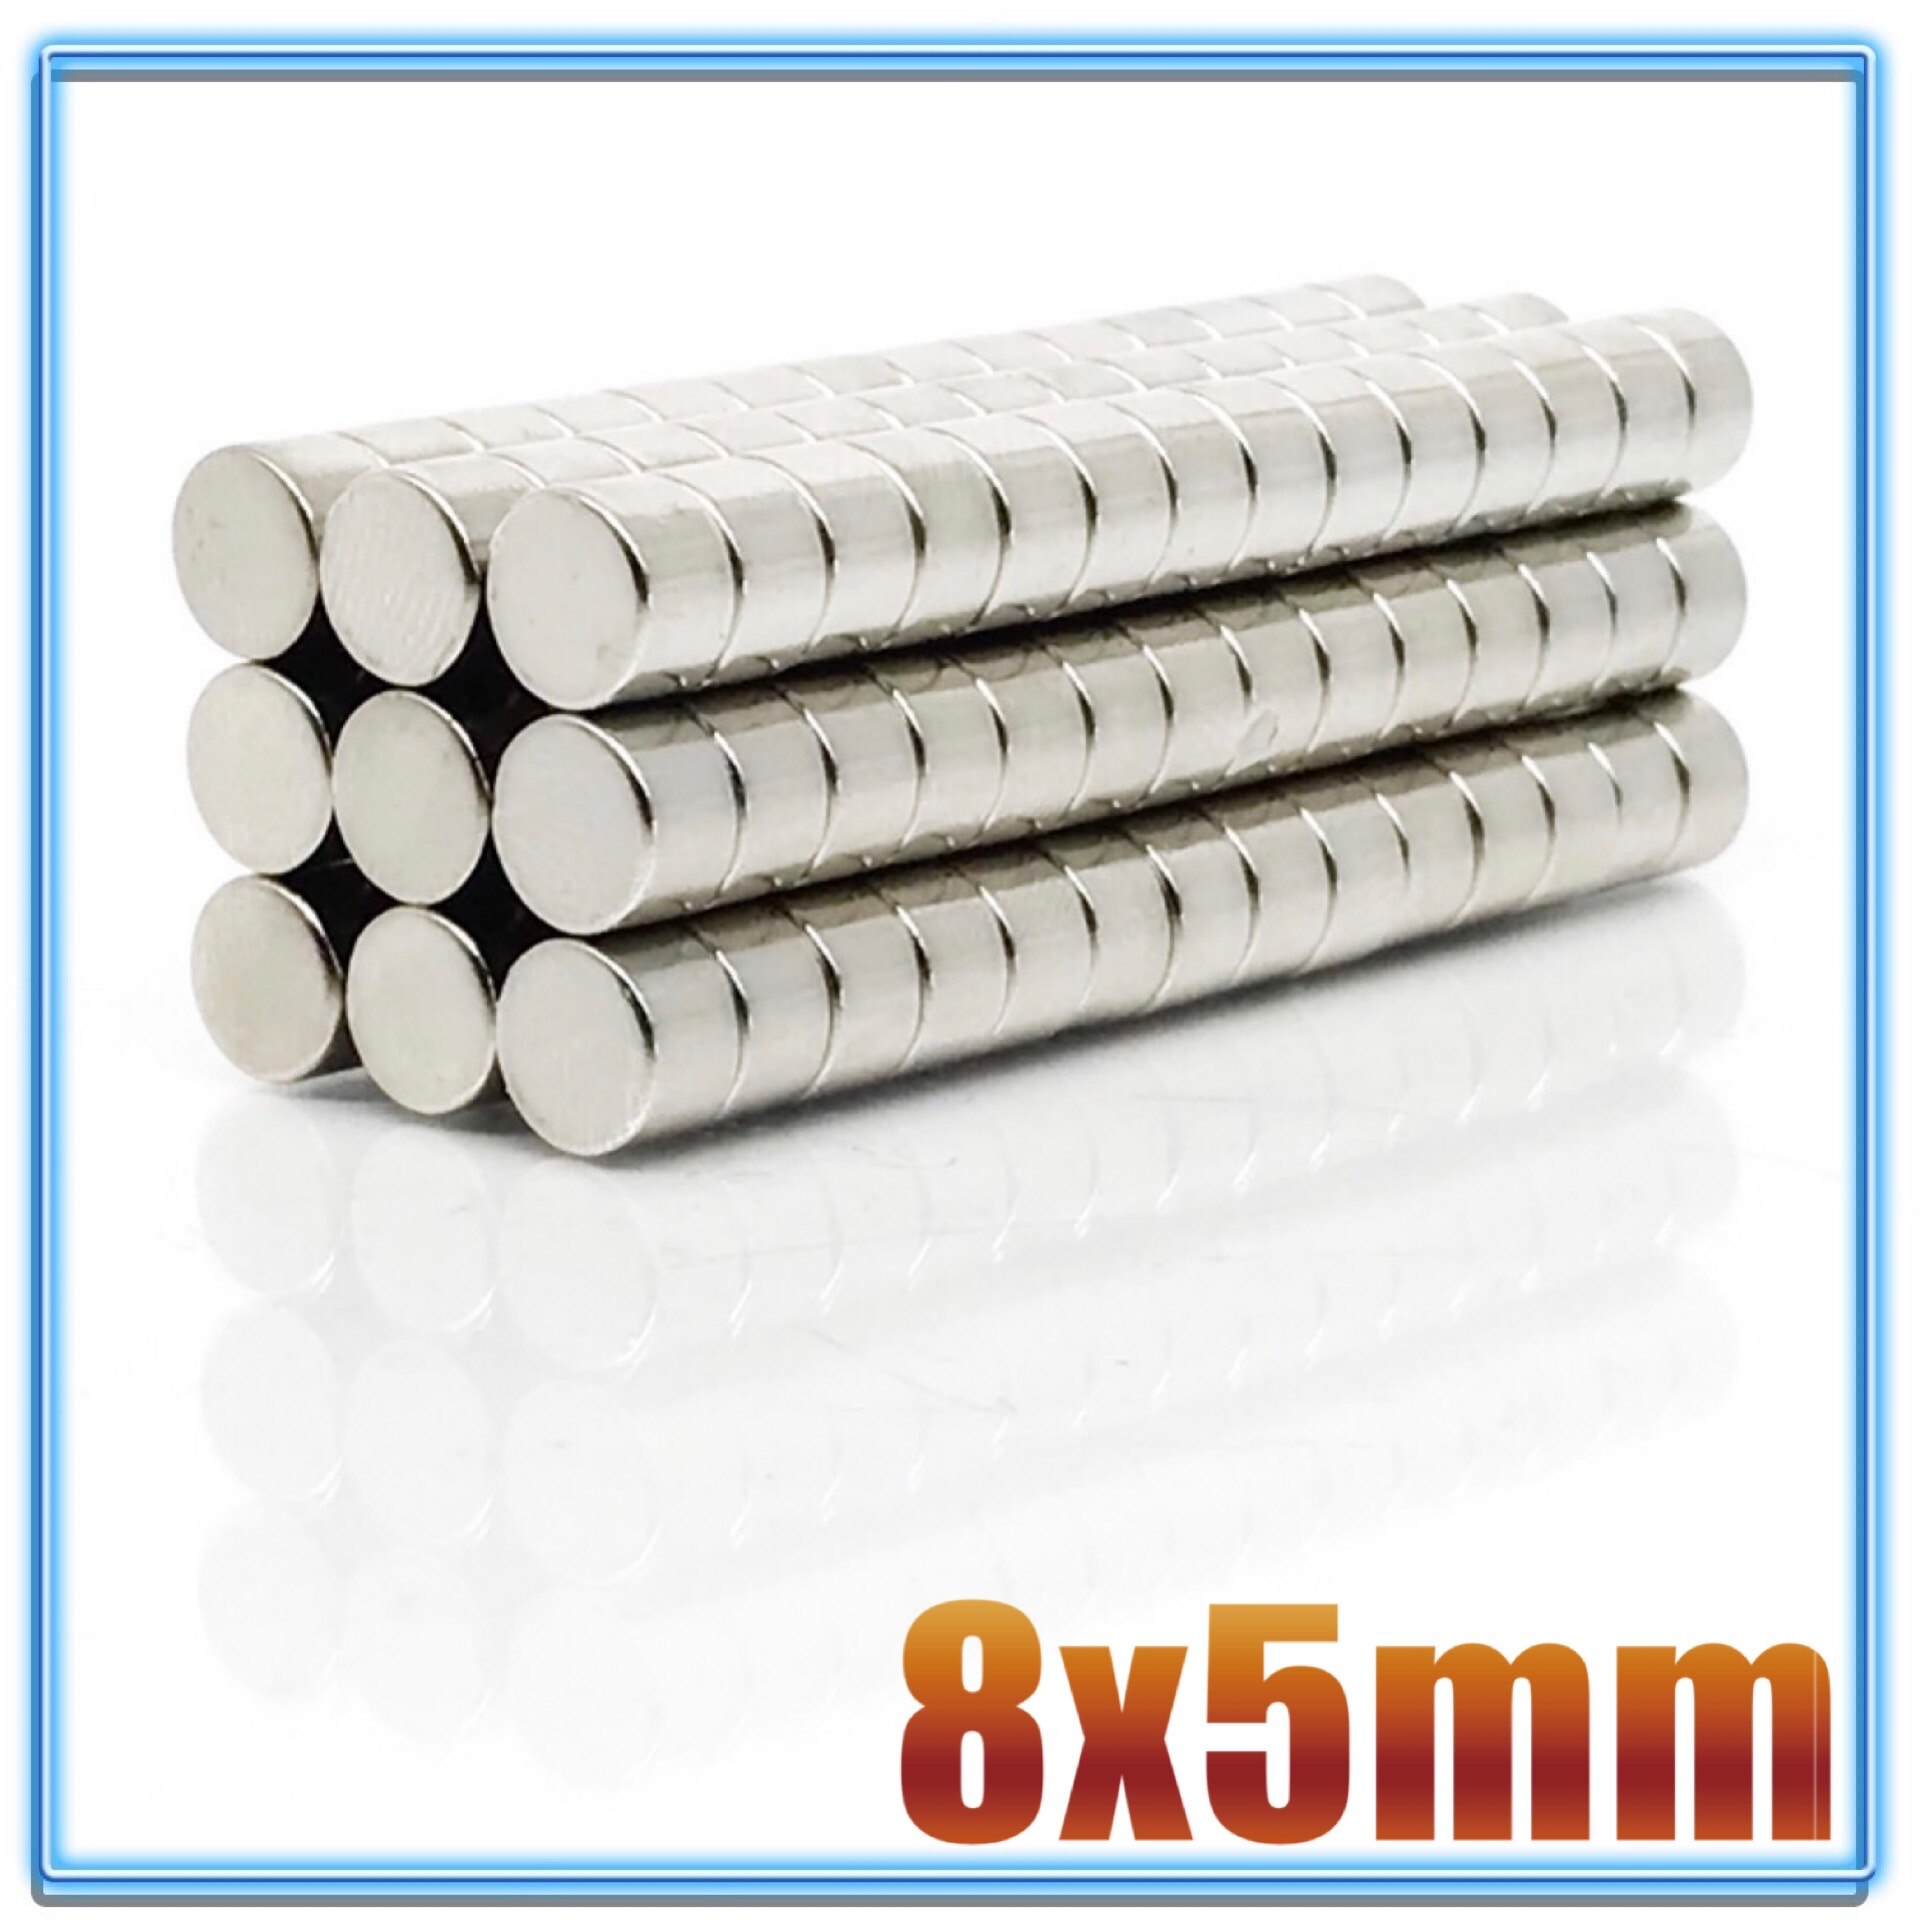 100 stk  n35 rund magnet 8 x 1 8 x 1.5 8 x 2 8 x 3 8 x 4 8 x 5 8 x 6 8 x 10 mm neodymmagnet permanent ndfeb superstærke kraftige magneter: 8 x 5(100 stk)